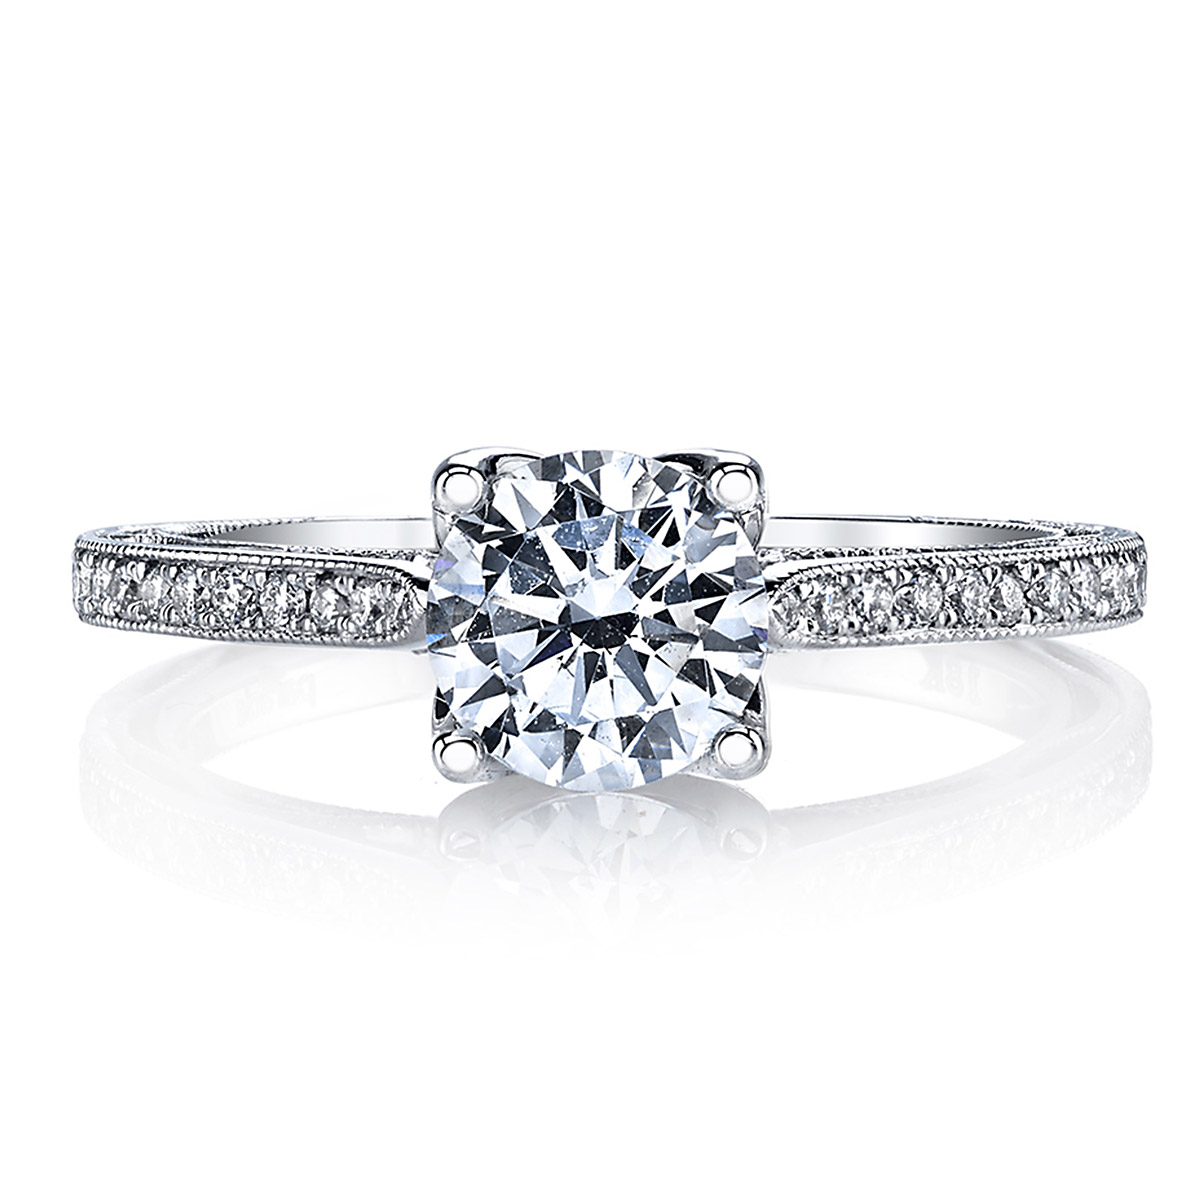 Parade Hera Bridal R2928C 18 Karat Diamond Engagement Ring Alternative View 1